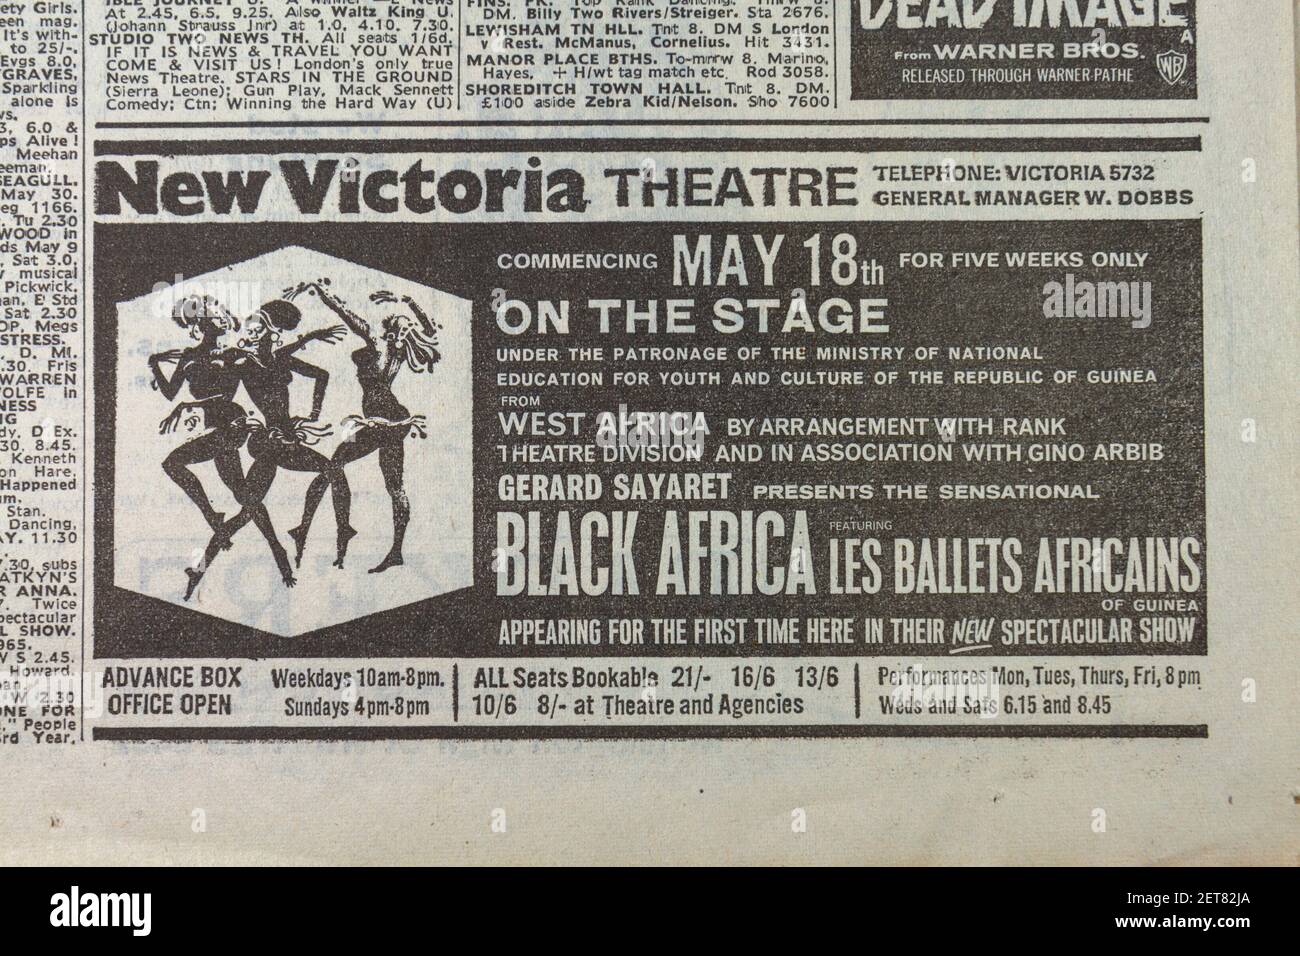 Publicité pour 'Black Africa' ('les Ballets Africaens') au New Victoria Theatre dans le Evening News Newspaper (lundi 27 avril 1964), Londres, Royaume-Uni. Banque D'Images